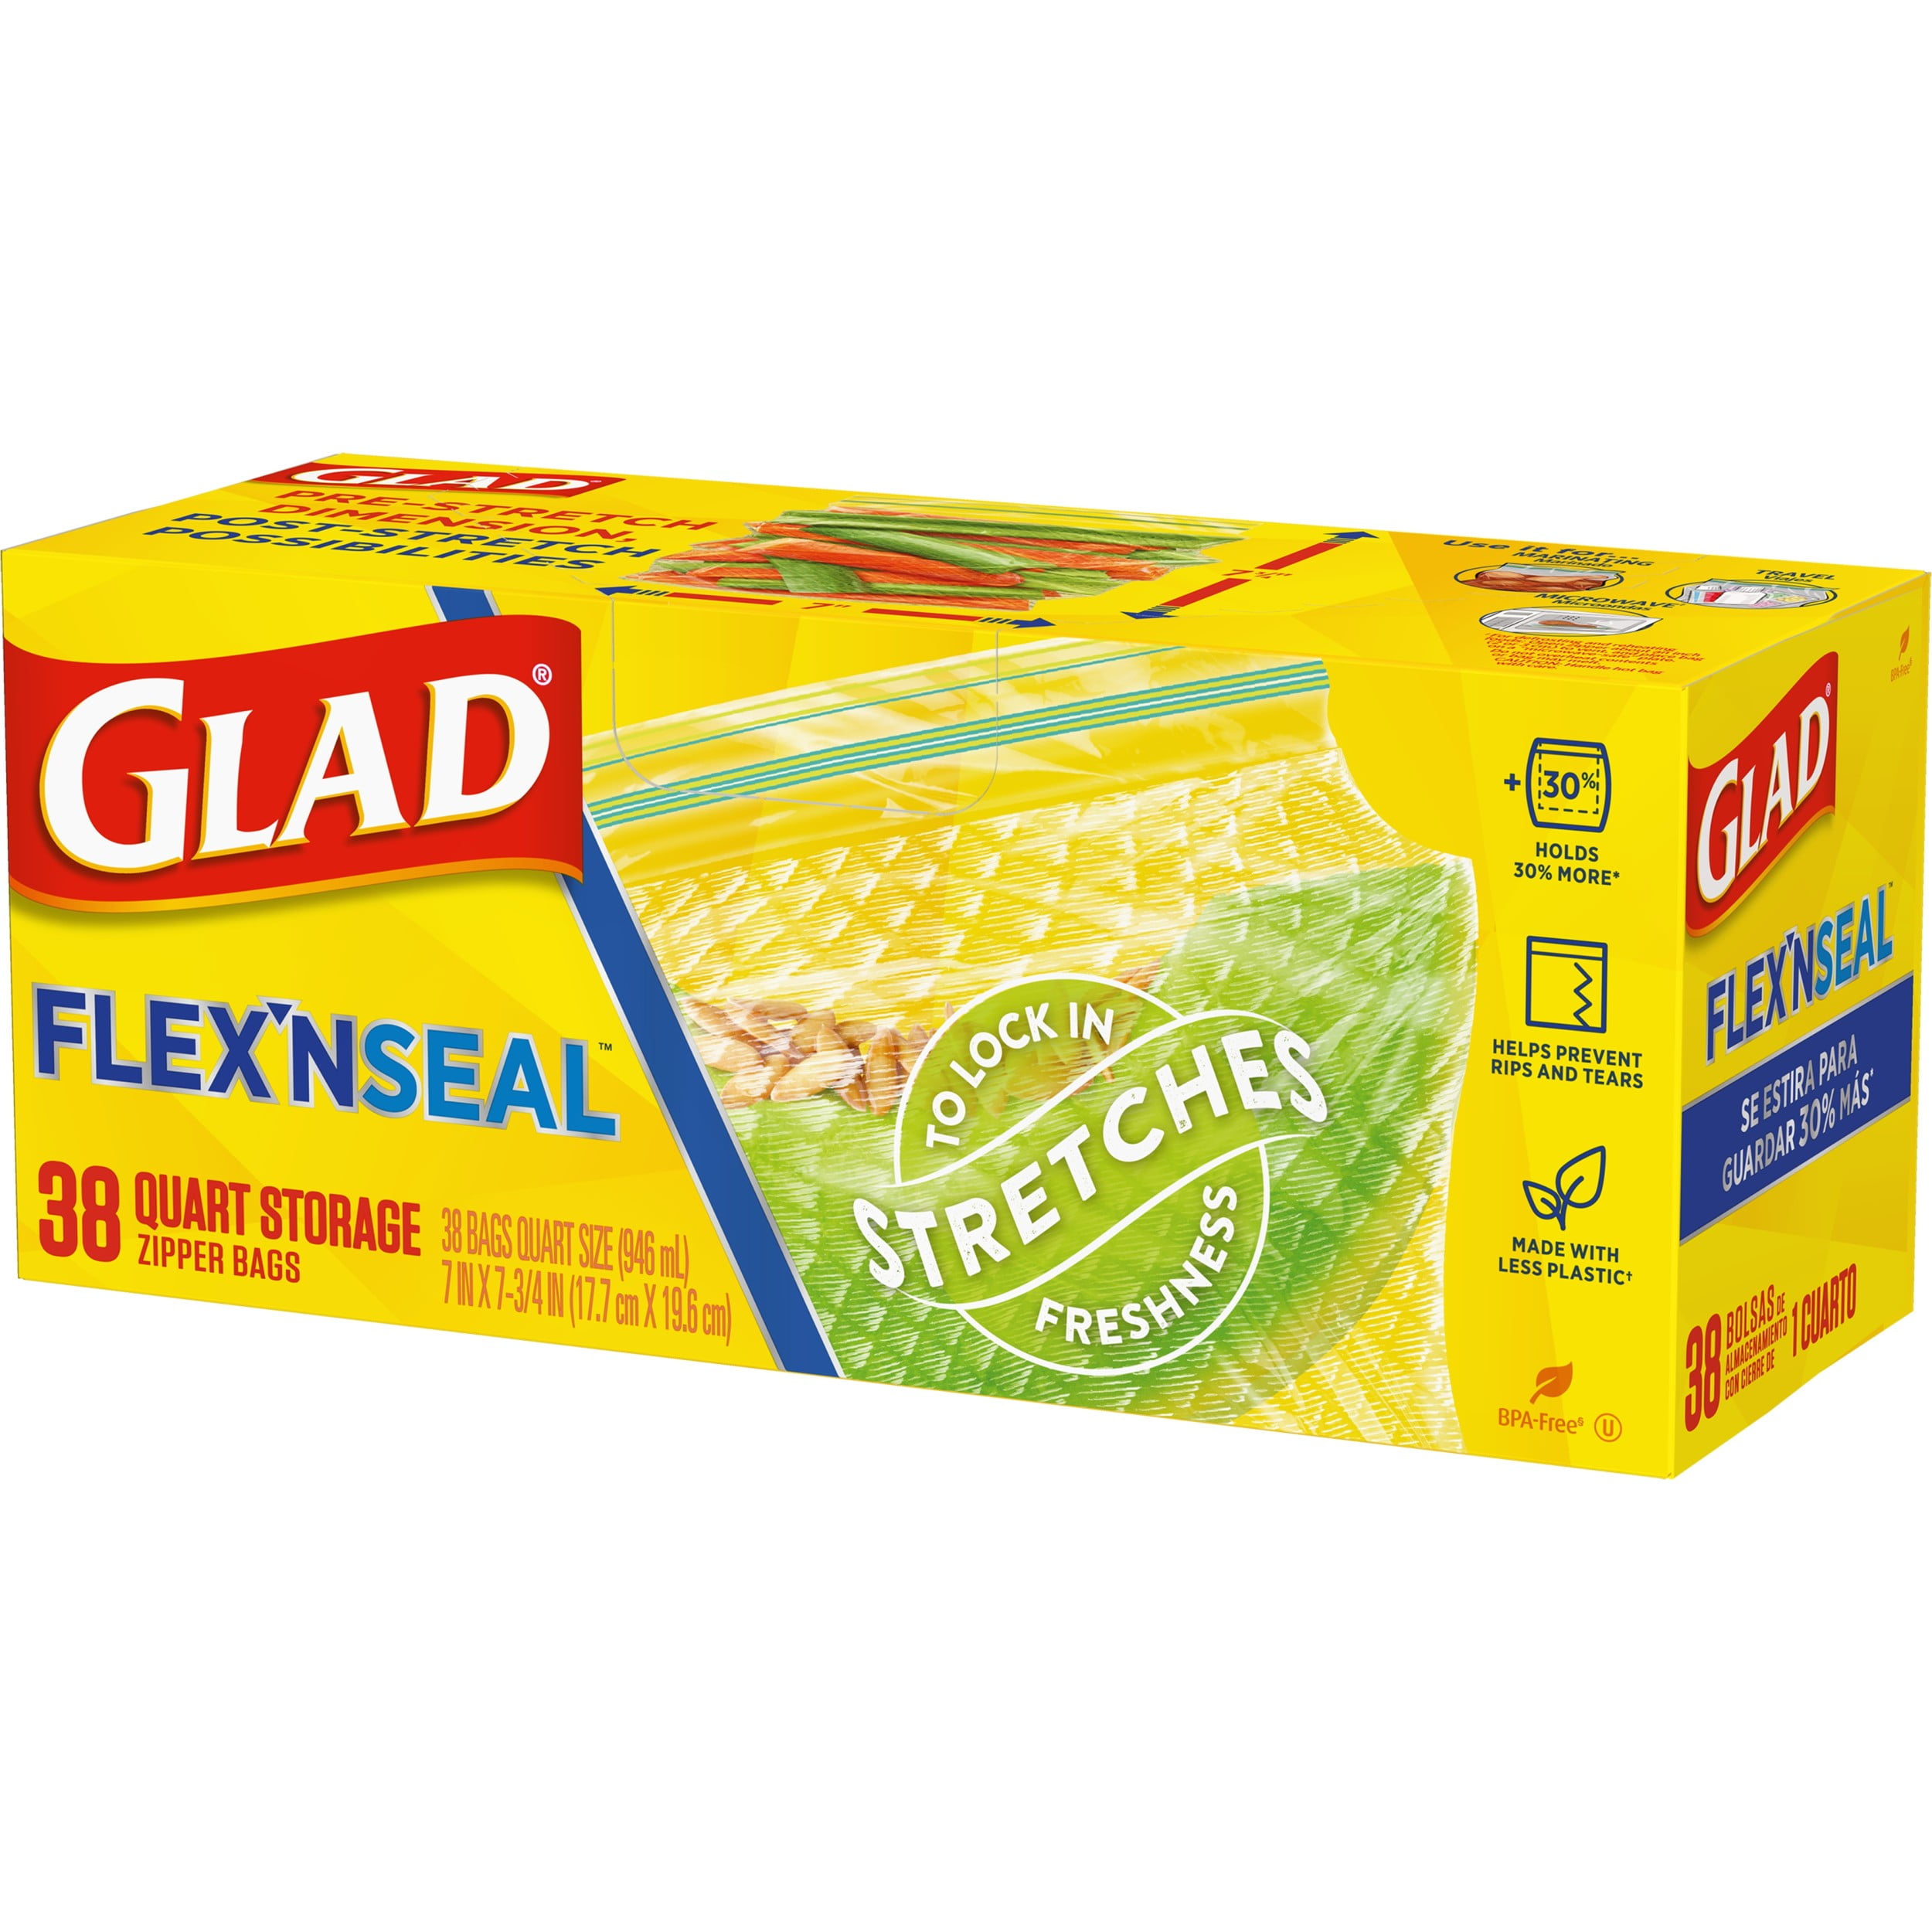 Glad FLEXN SEAL Zipper Food Storage Quart Bags, 38 Count 